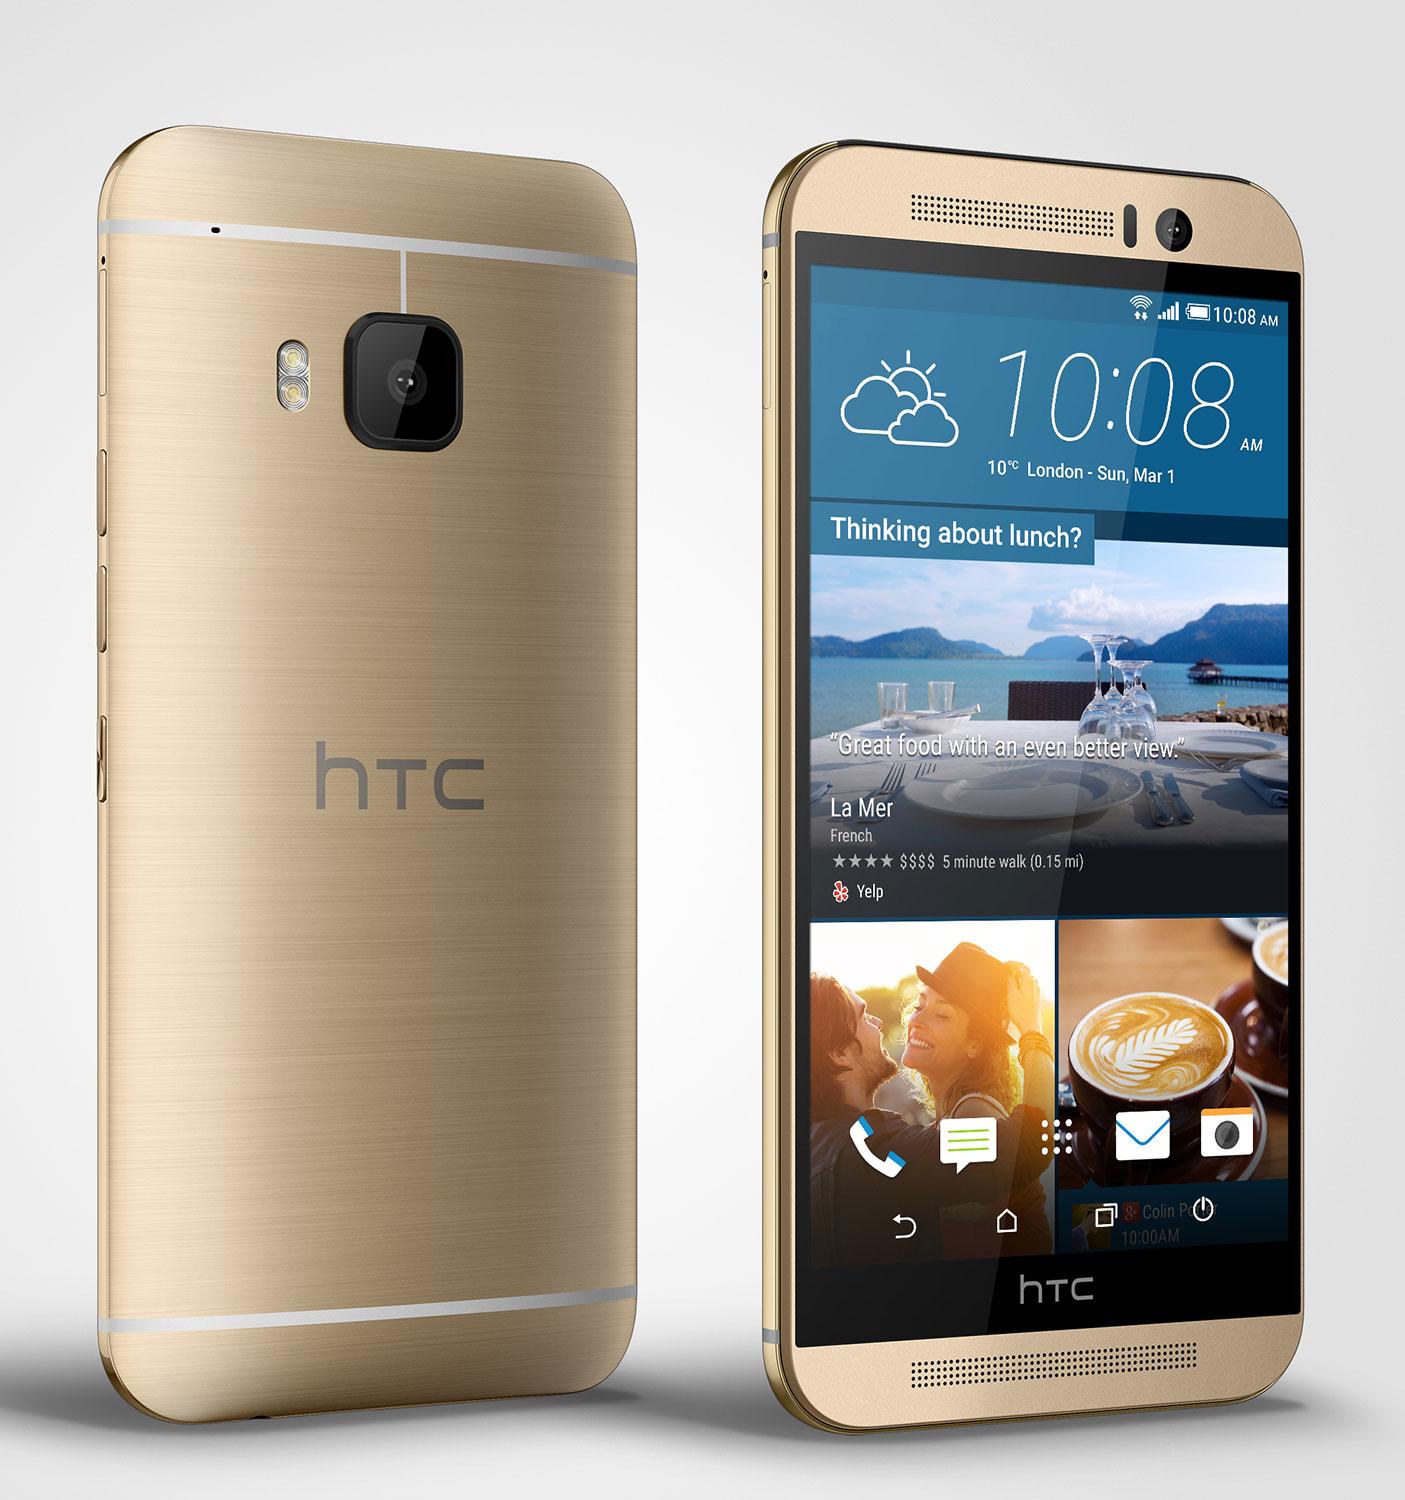 Surgen más datos sobre el HTC One (M9) y HTC One (M9) Plus